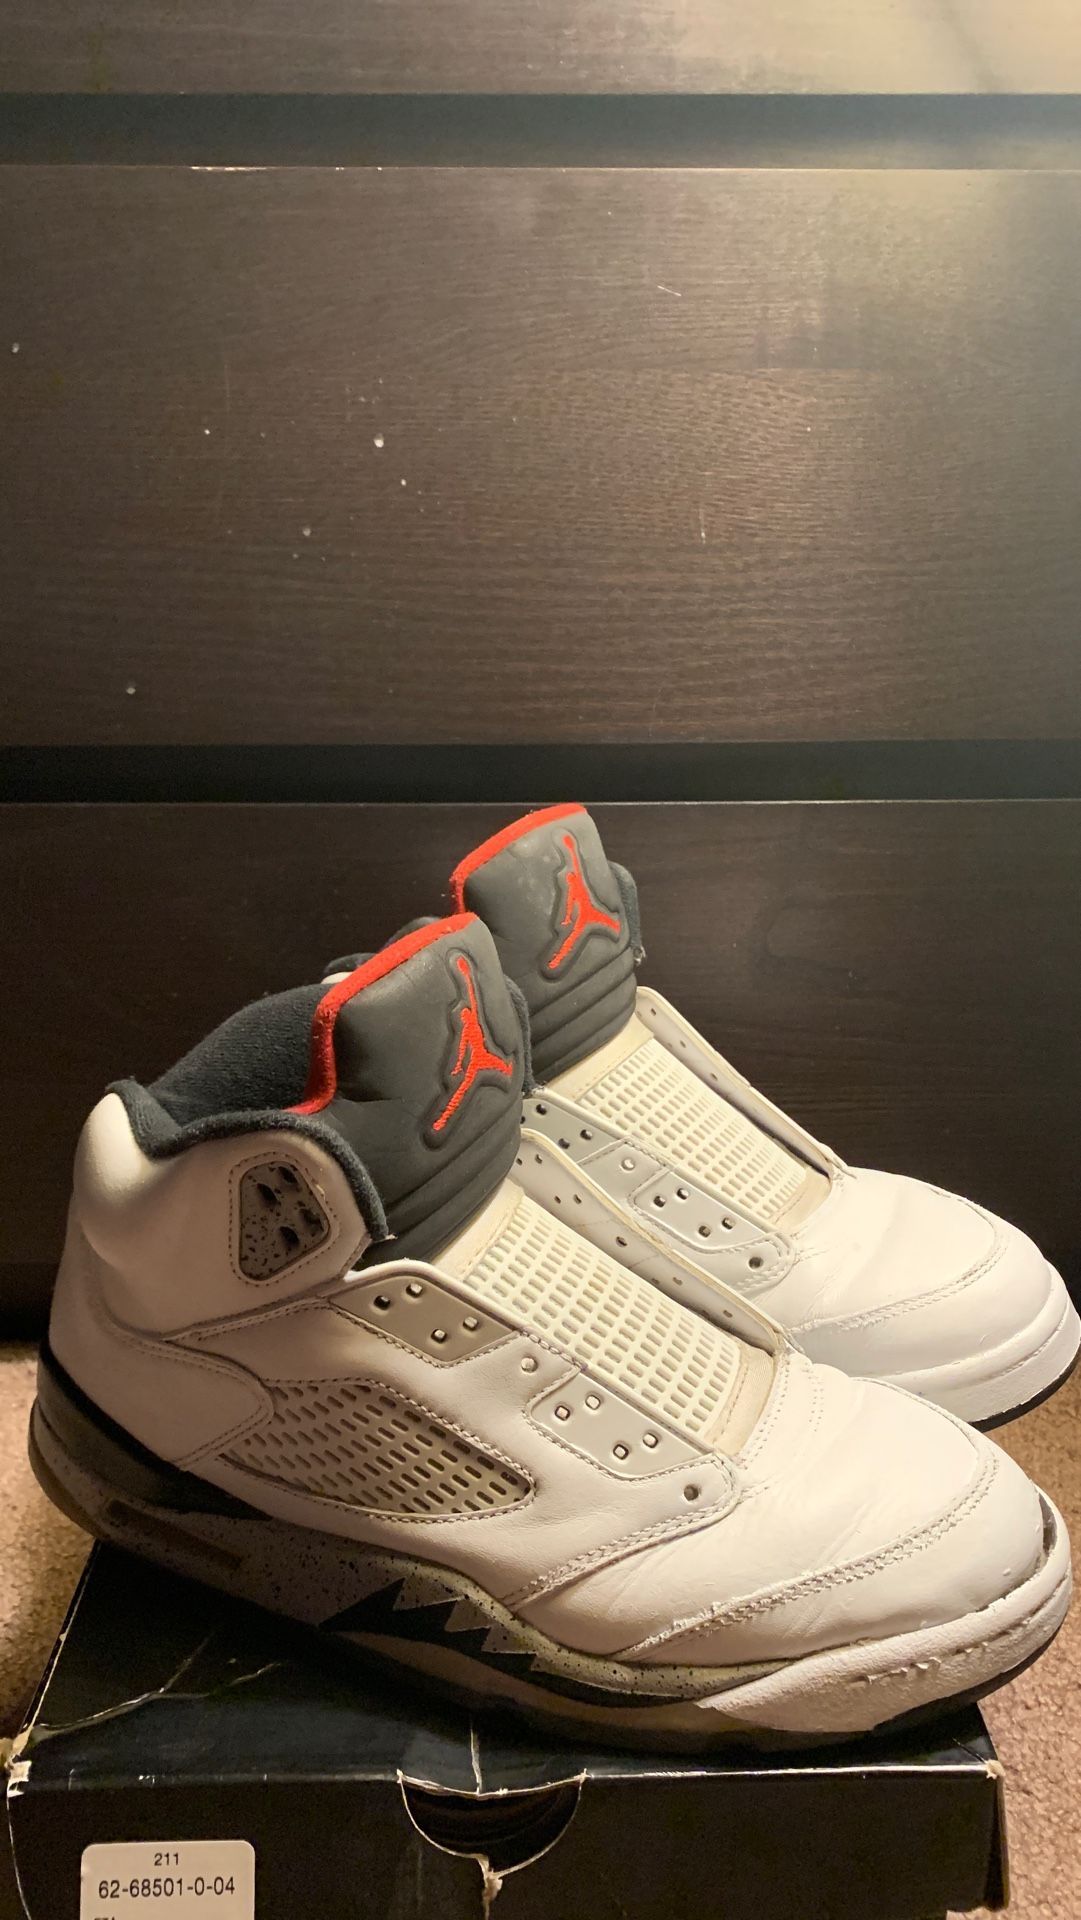 White cement Jordan 5’s